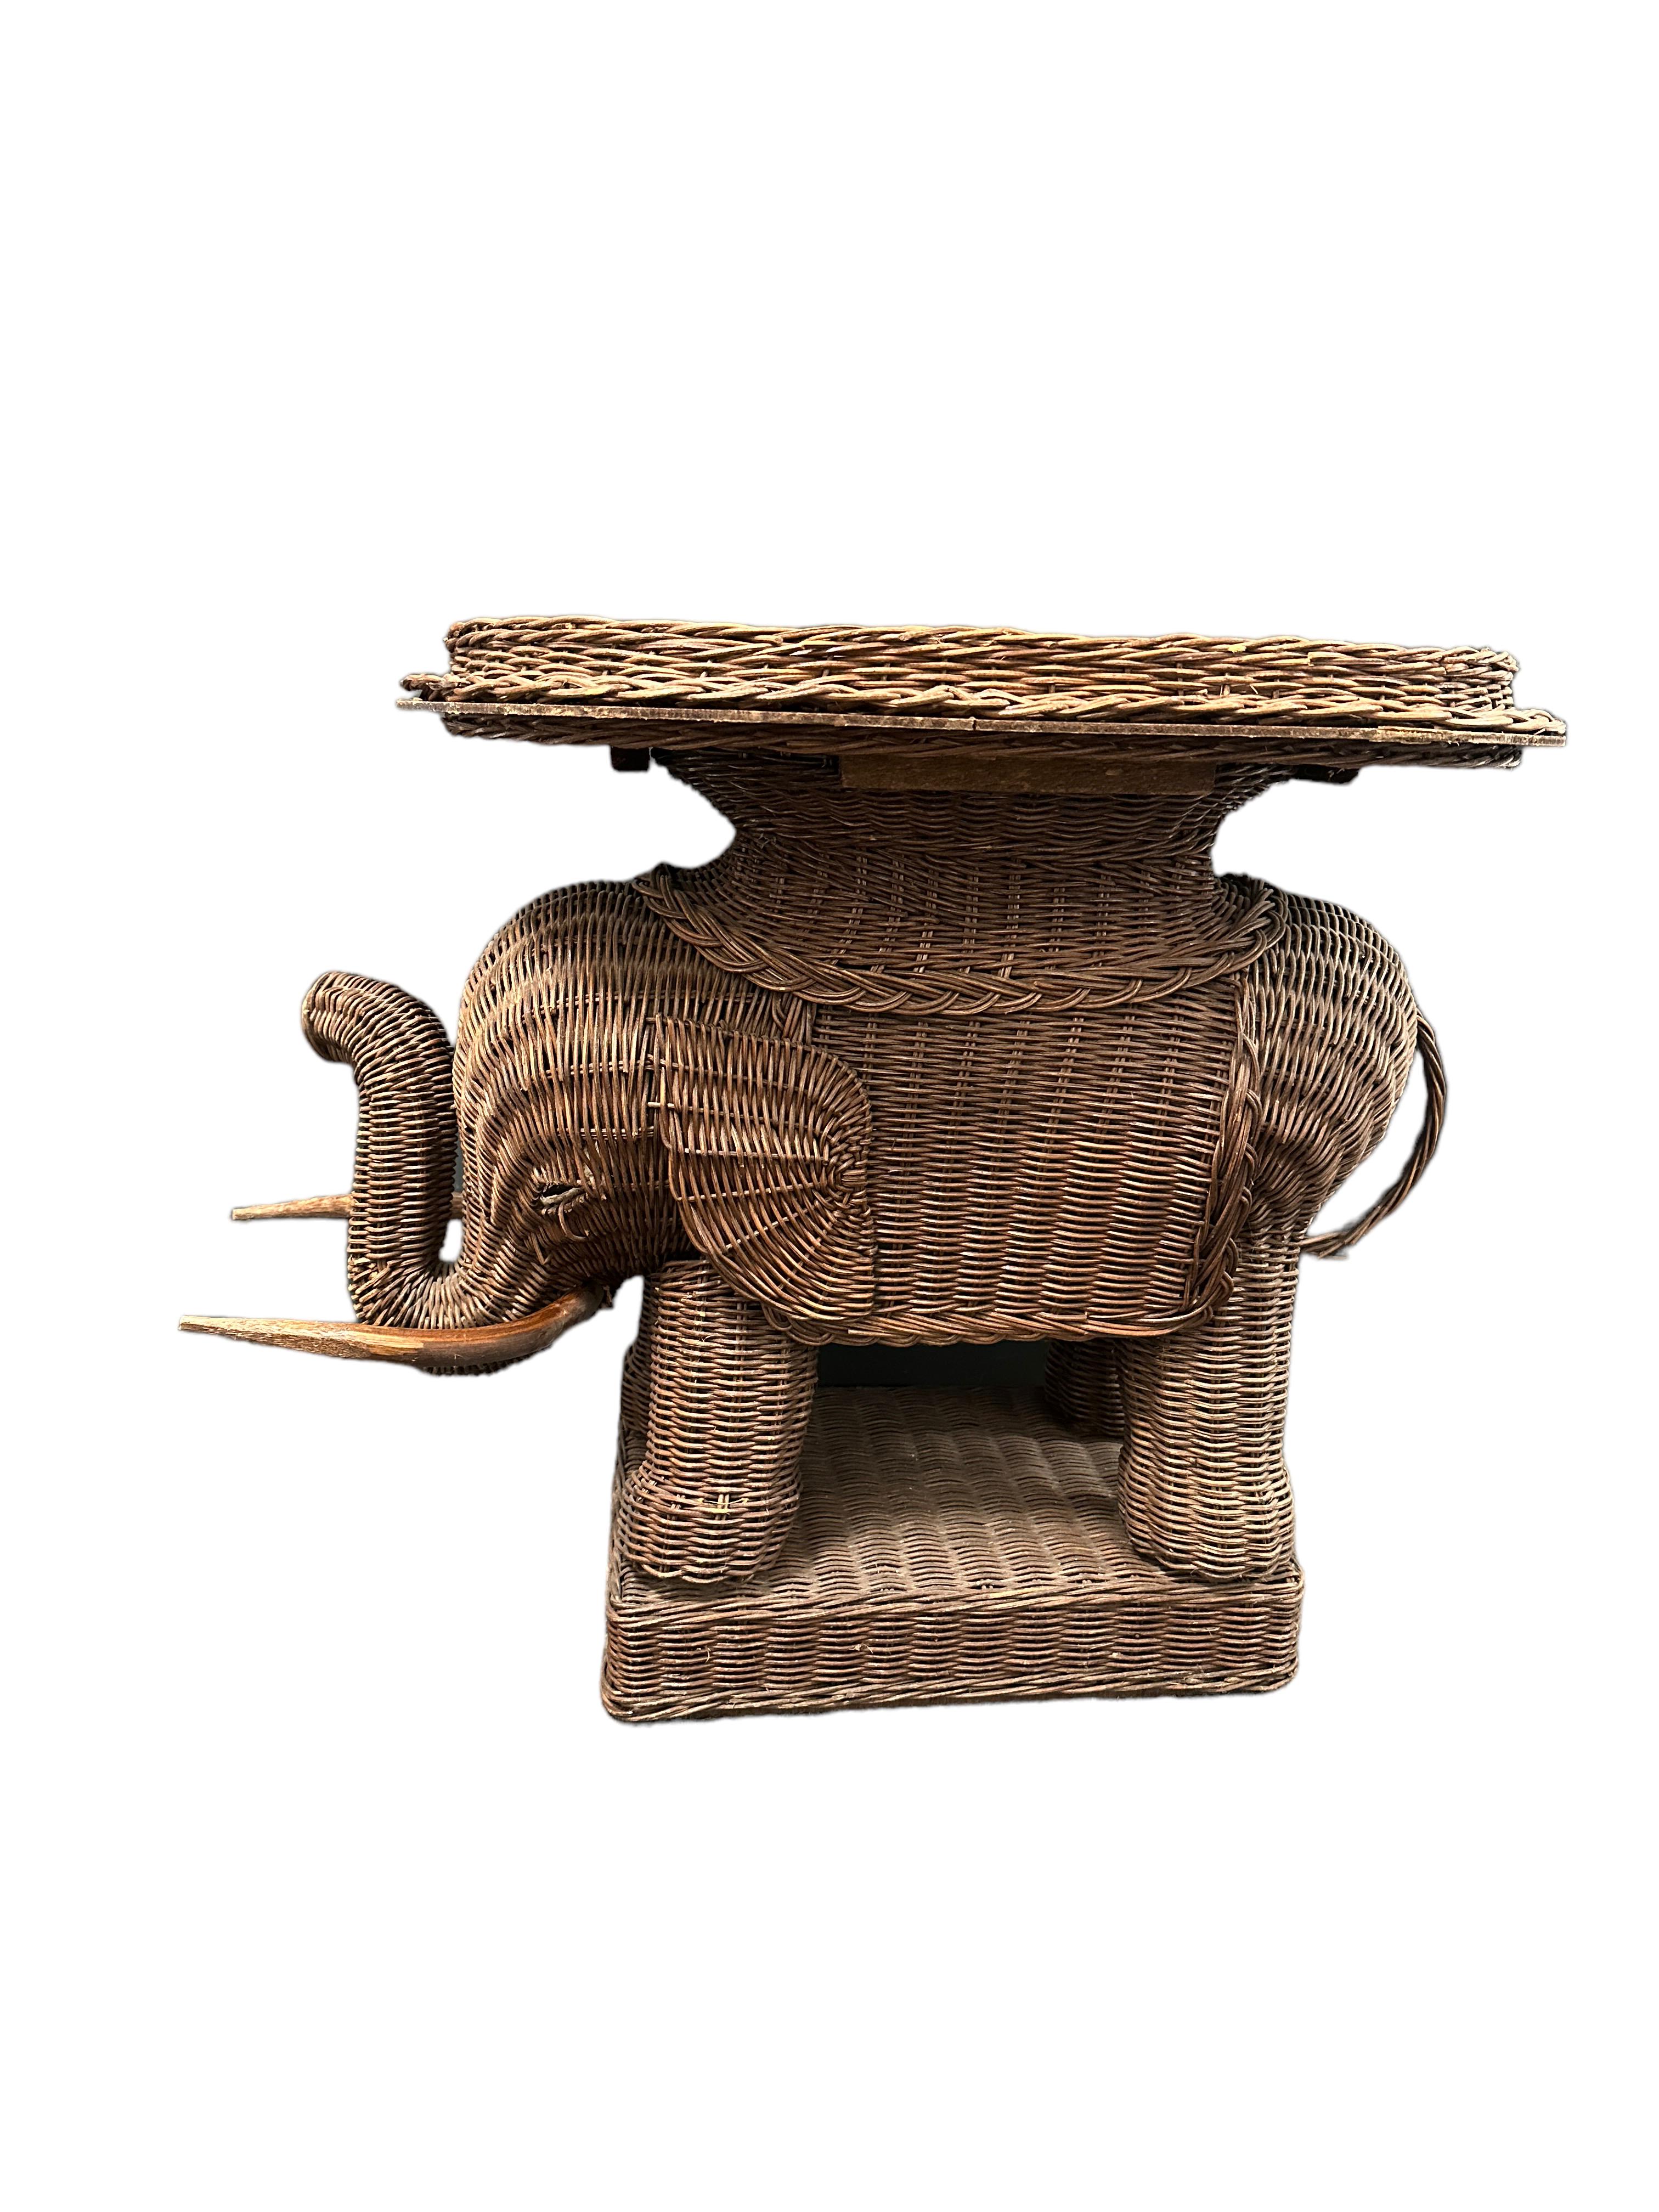 Elefantenförmiger End- oder Beistelltisch aus der Mitte des 20. Jahrhunderts aus handgeflochtenem Rattan mit Holzstoßzähnen. Eine schöne Ergänzung für Ihr Haus, Ihre Terrasse oder Ihren Garten. Dies ist in gebrauchtem Zustand, mit Anzeichen von